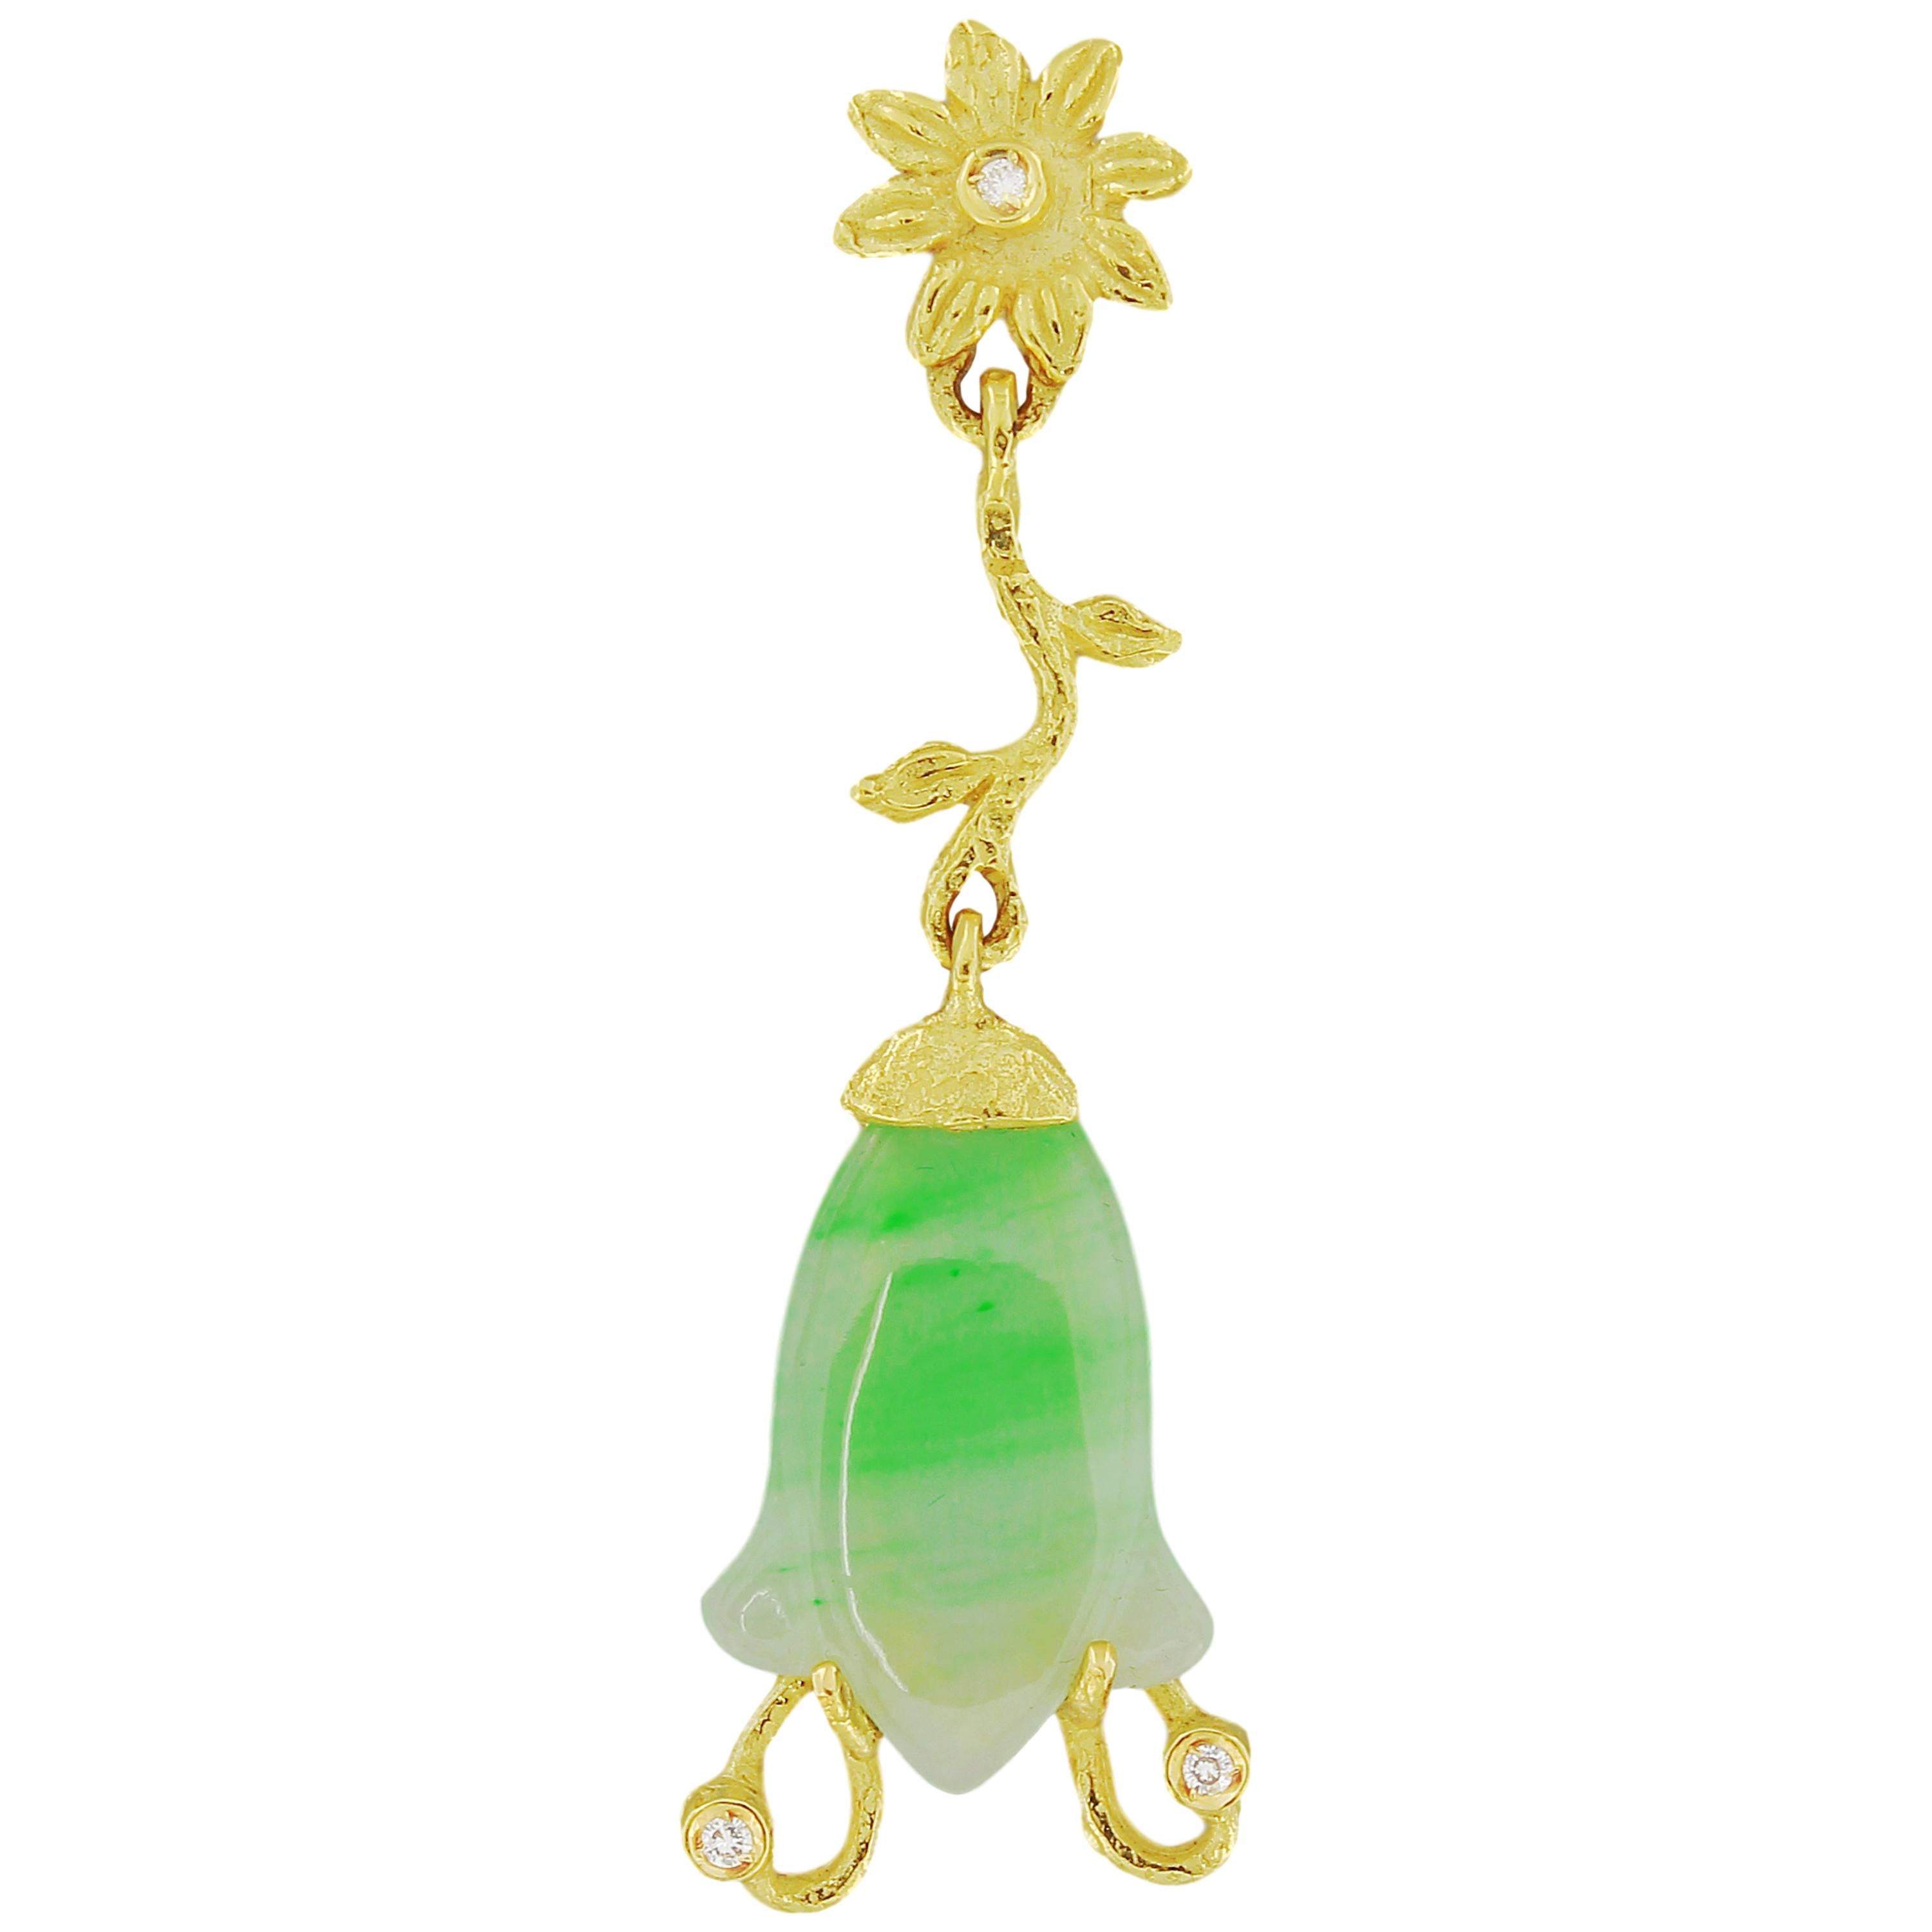 Boucles d'oreilles en goutte en or jaune 18 carats avec jade vert clair et diamants en forme de fleur, fabriquées à la main selon la technique du moulage à la cire perdue.

Le moulage à la cire perdue, l'une des plus anciennes techniques de création